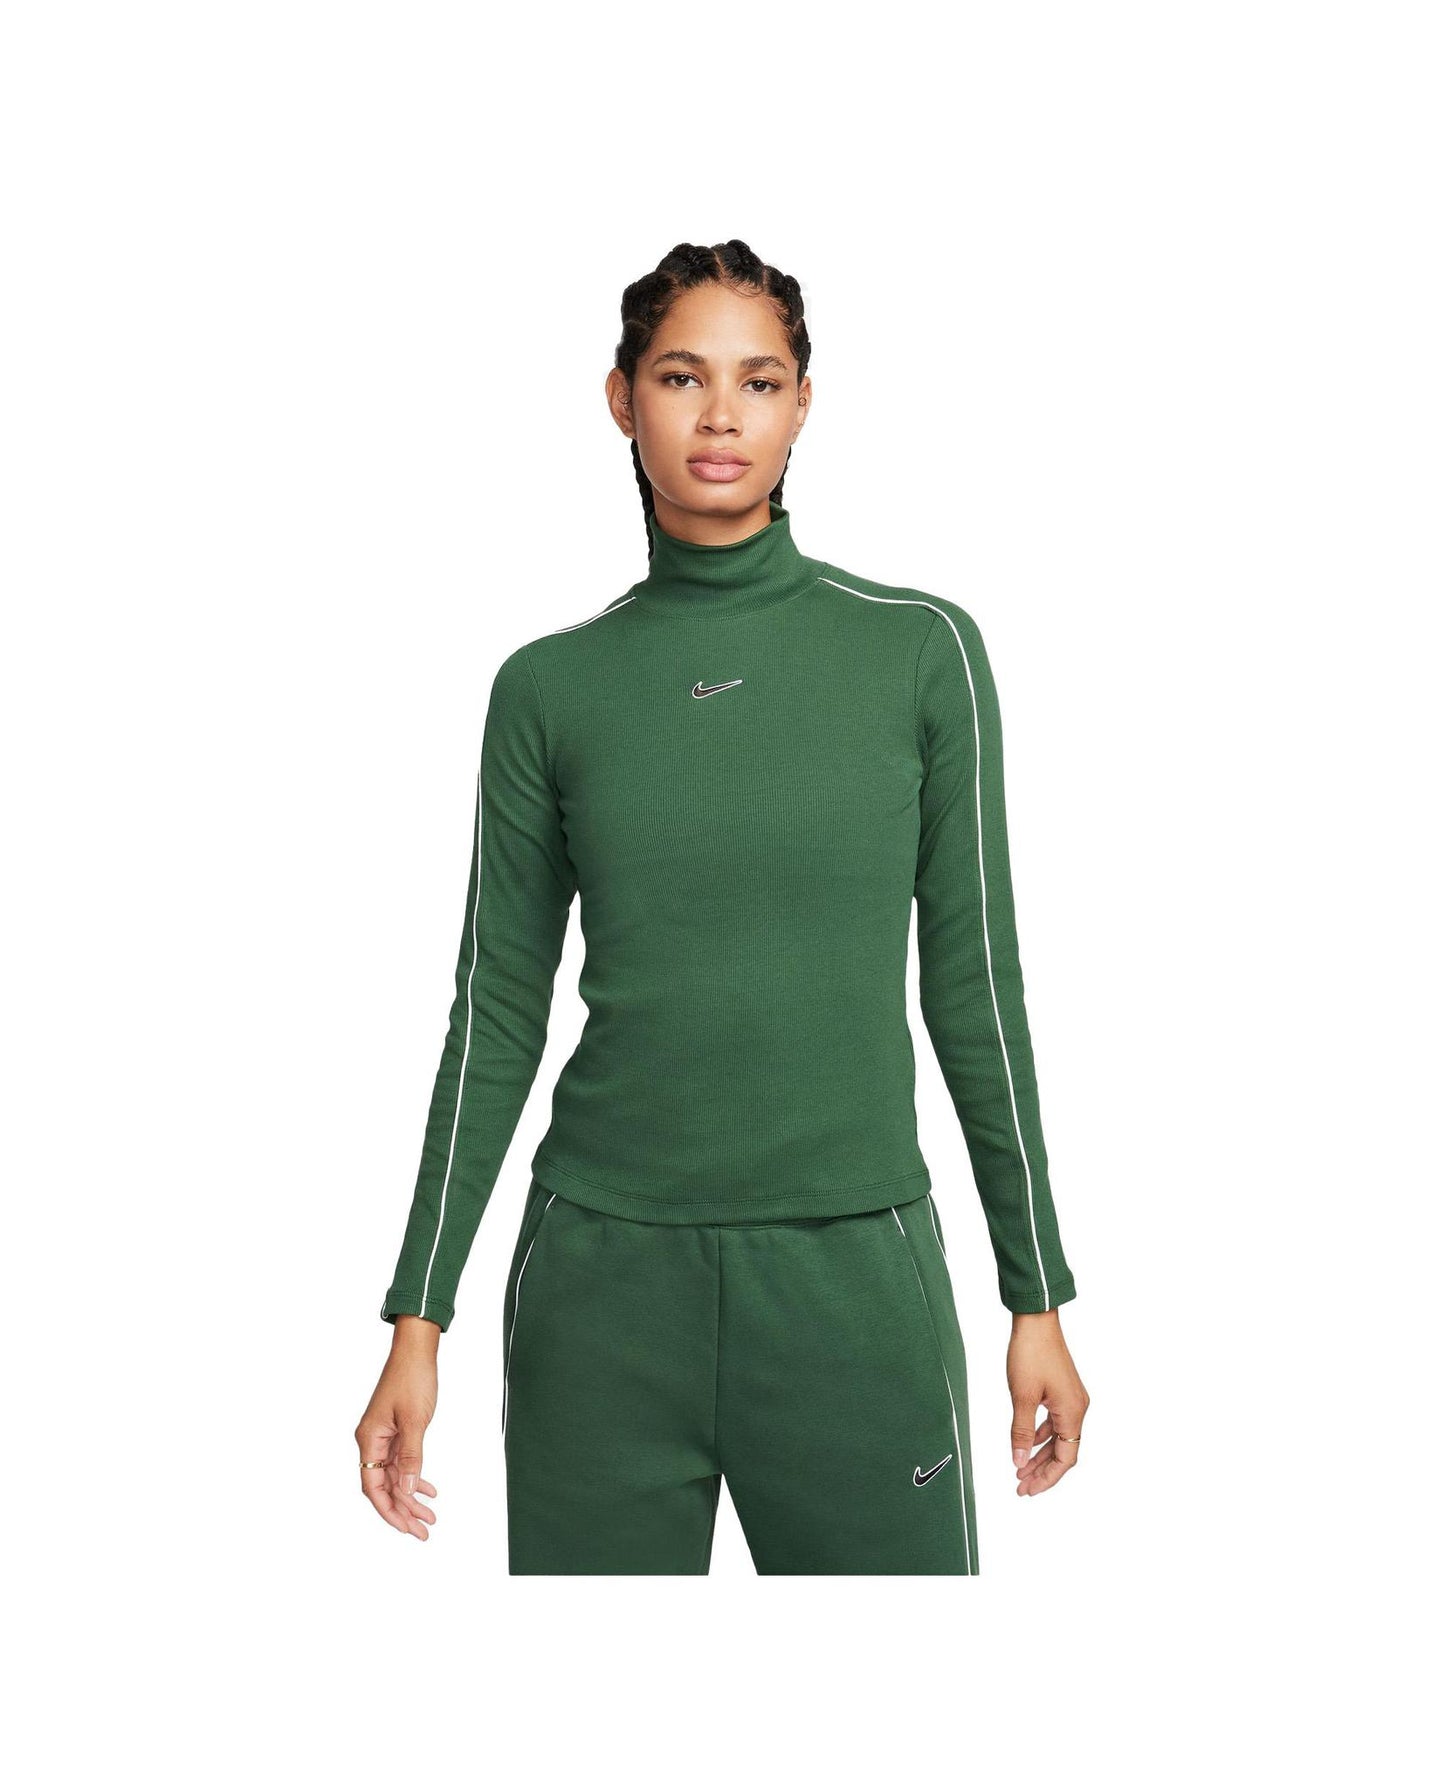 Nike Sportswear Women's Long-Sleeve Top